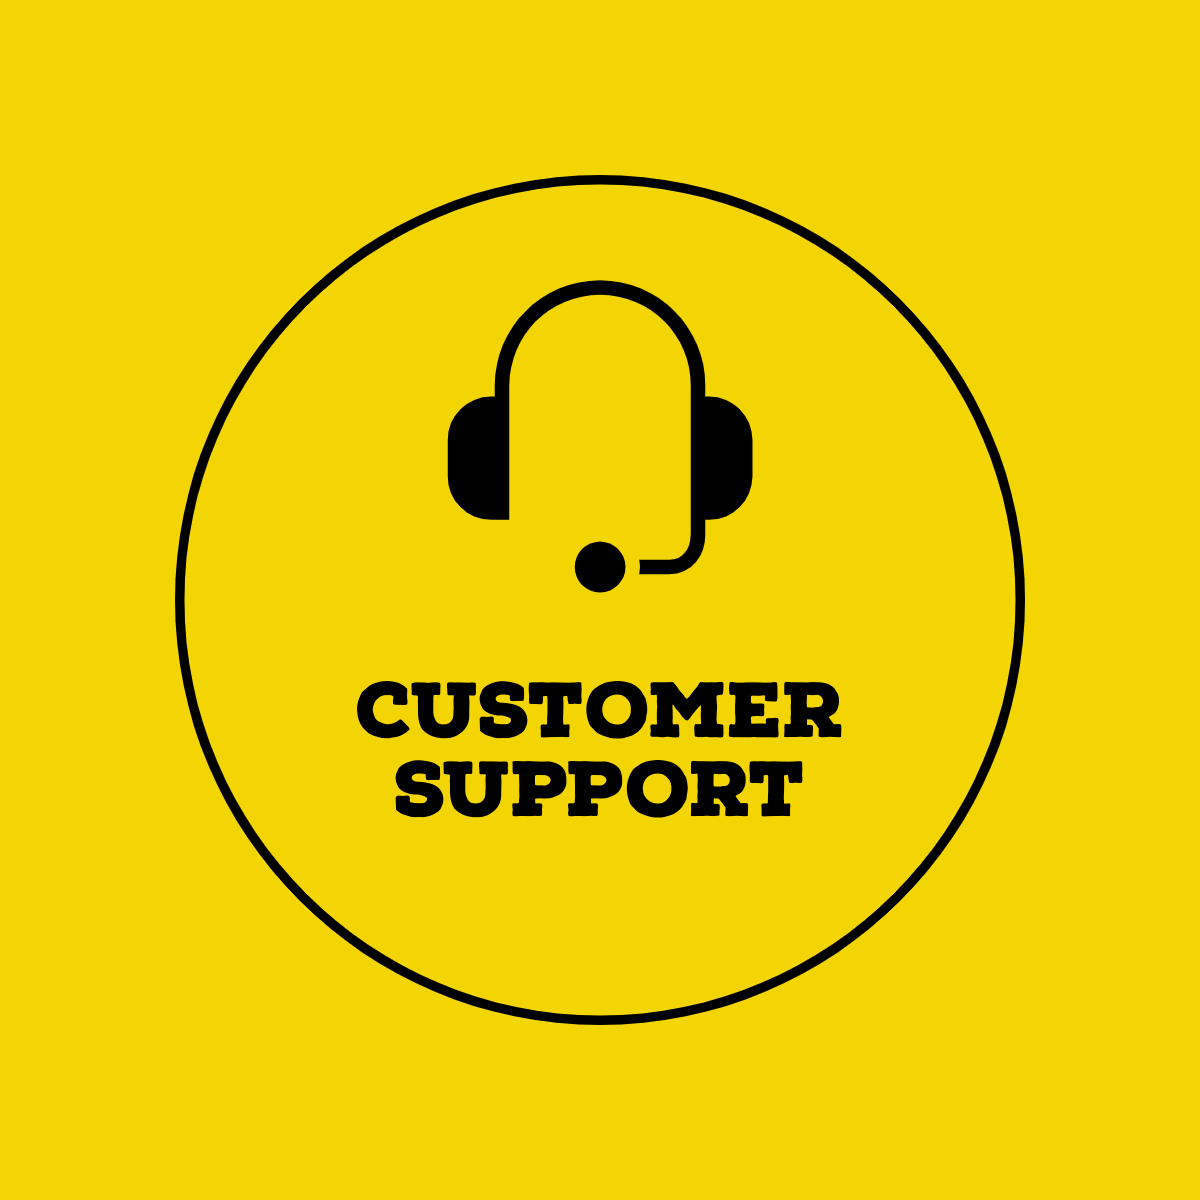 Customer_support-logos